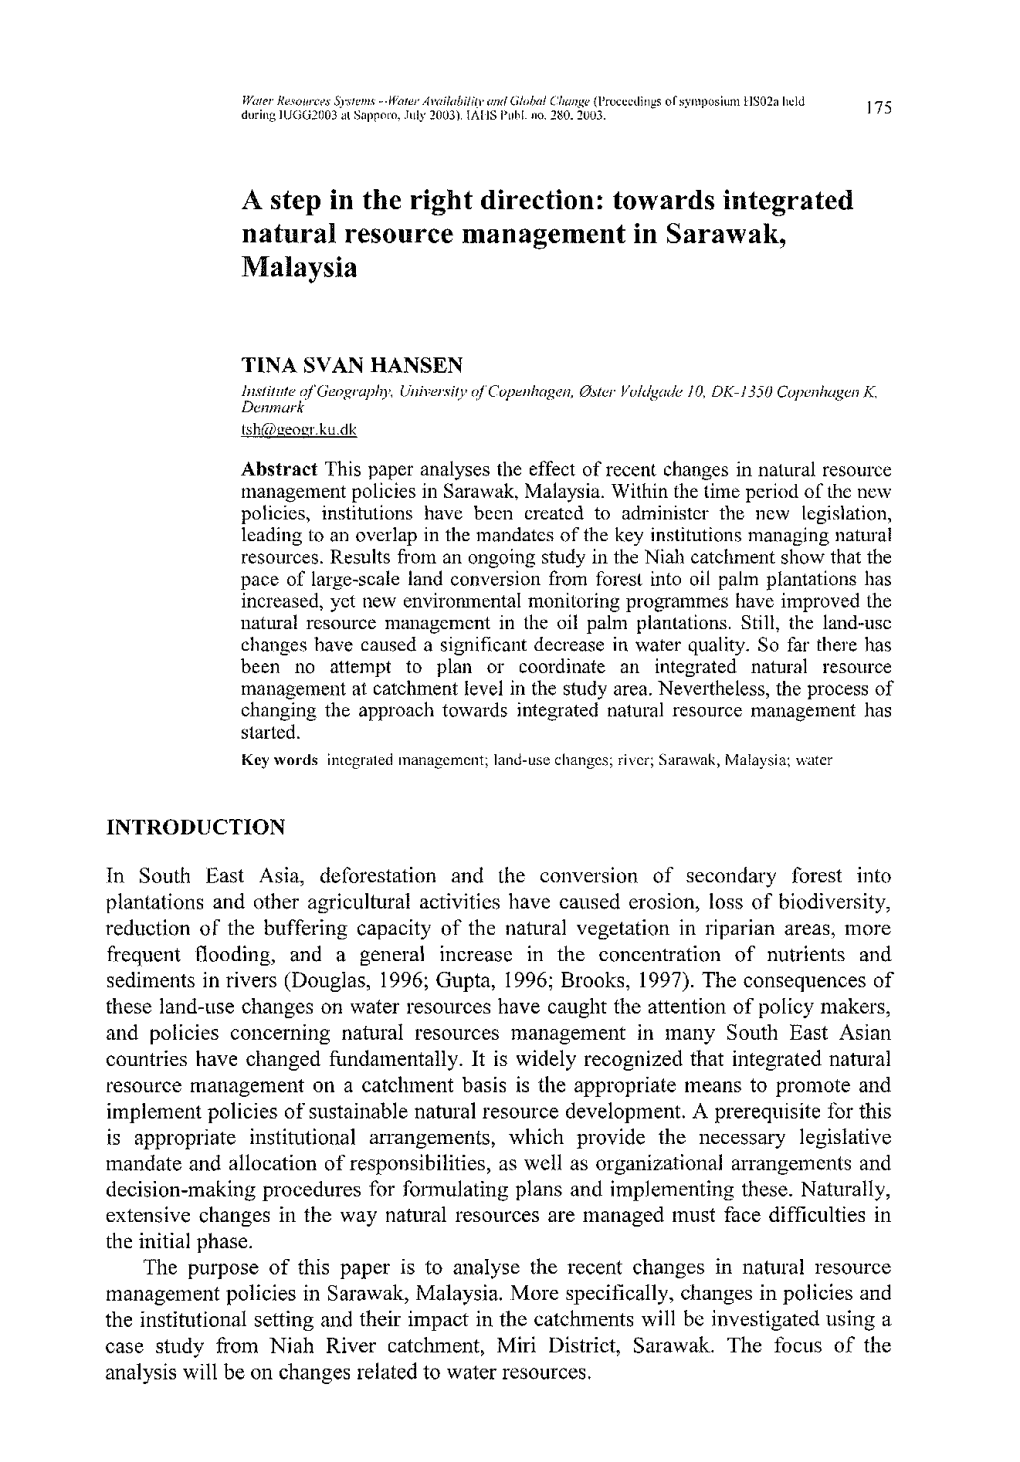 Towards Integrated Natural Resource Management in Sarawak, Malaysia